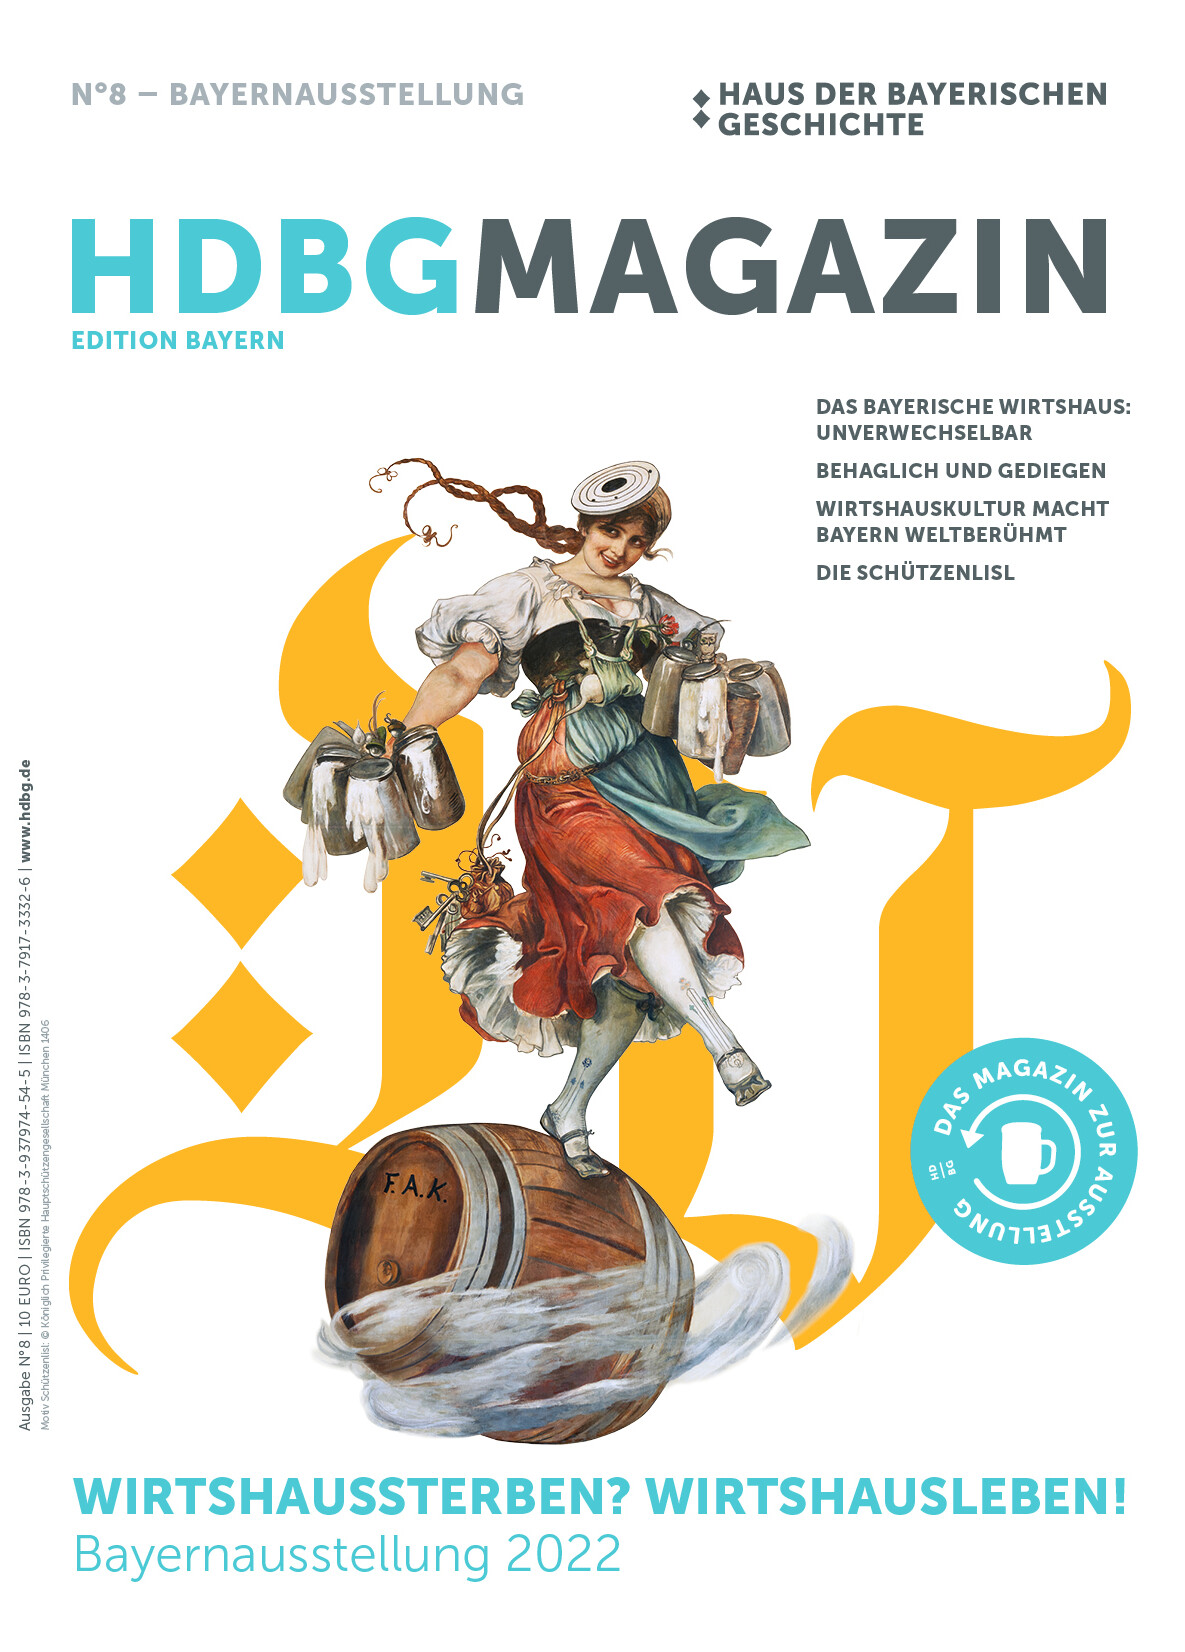 Das HdBG Magazin Nummer 8 zur Bayernausstellung "Wirtshaussterben? Wirtshausleben!"